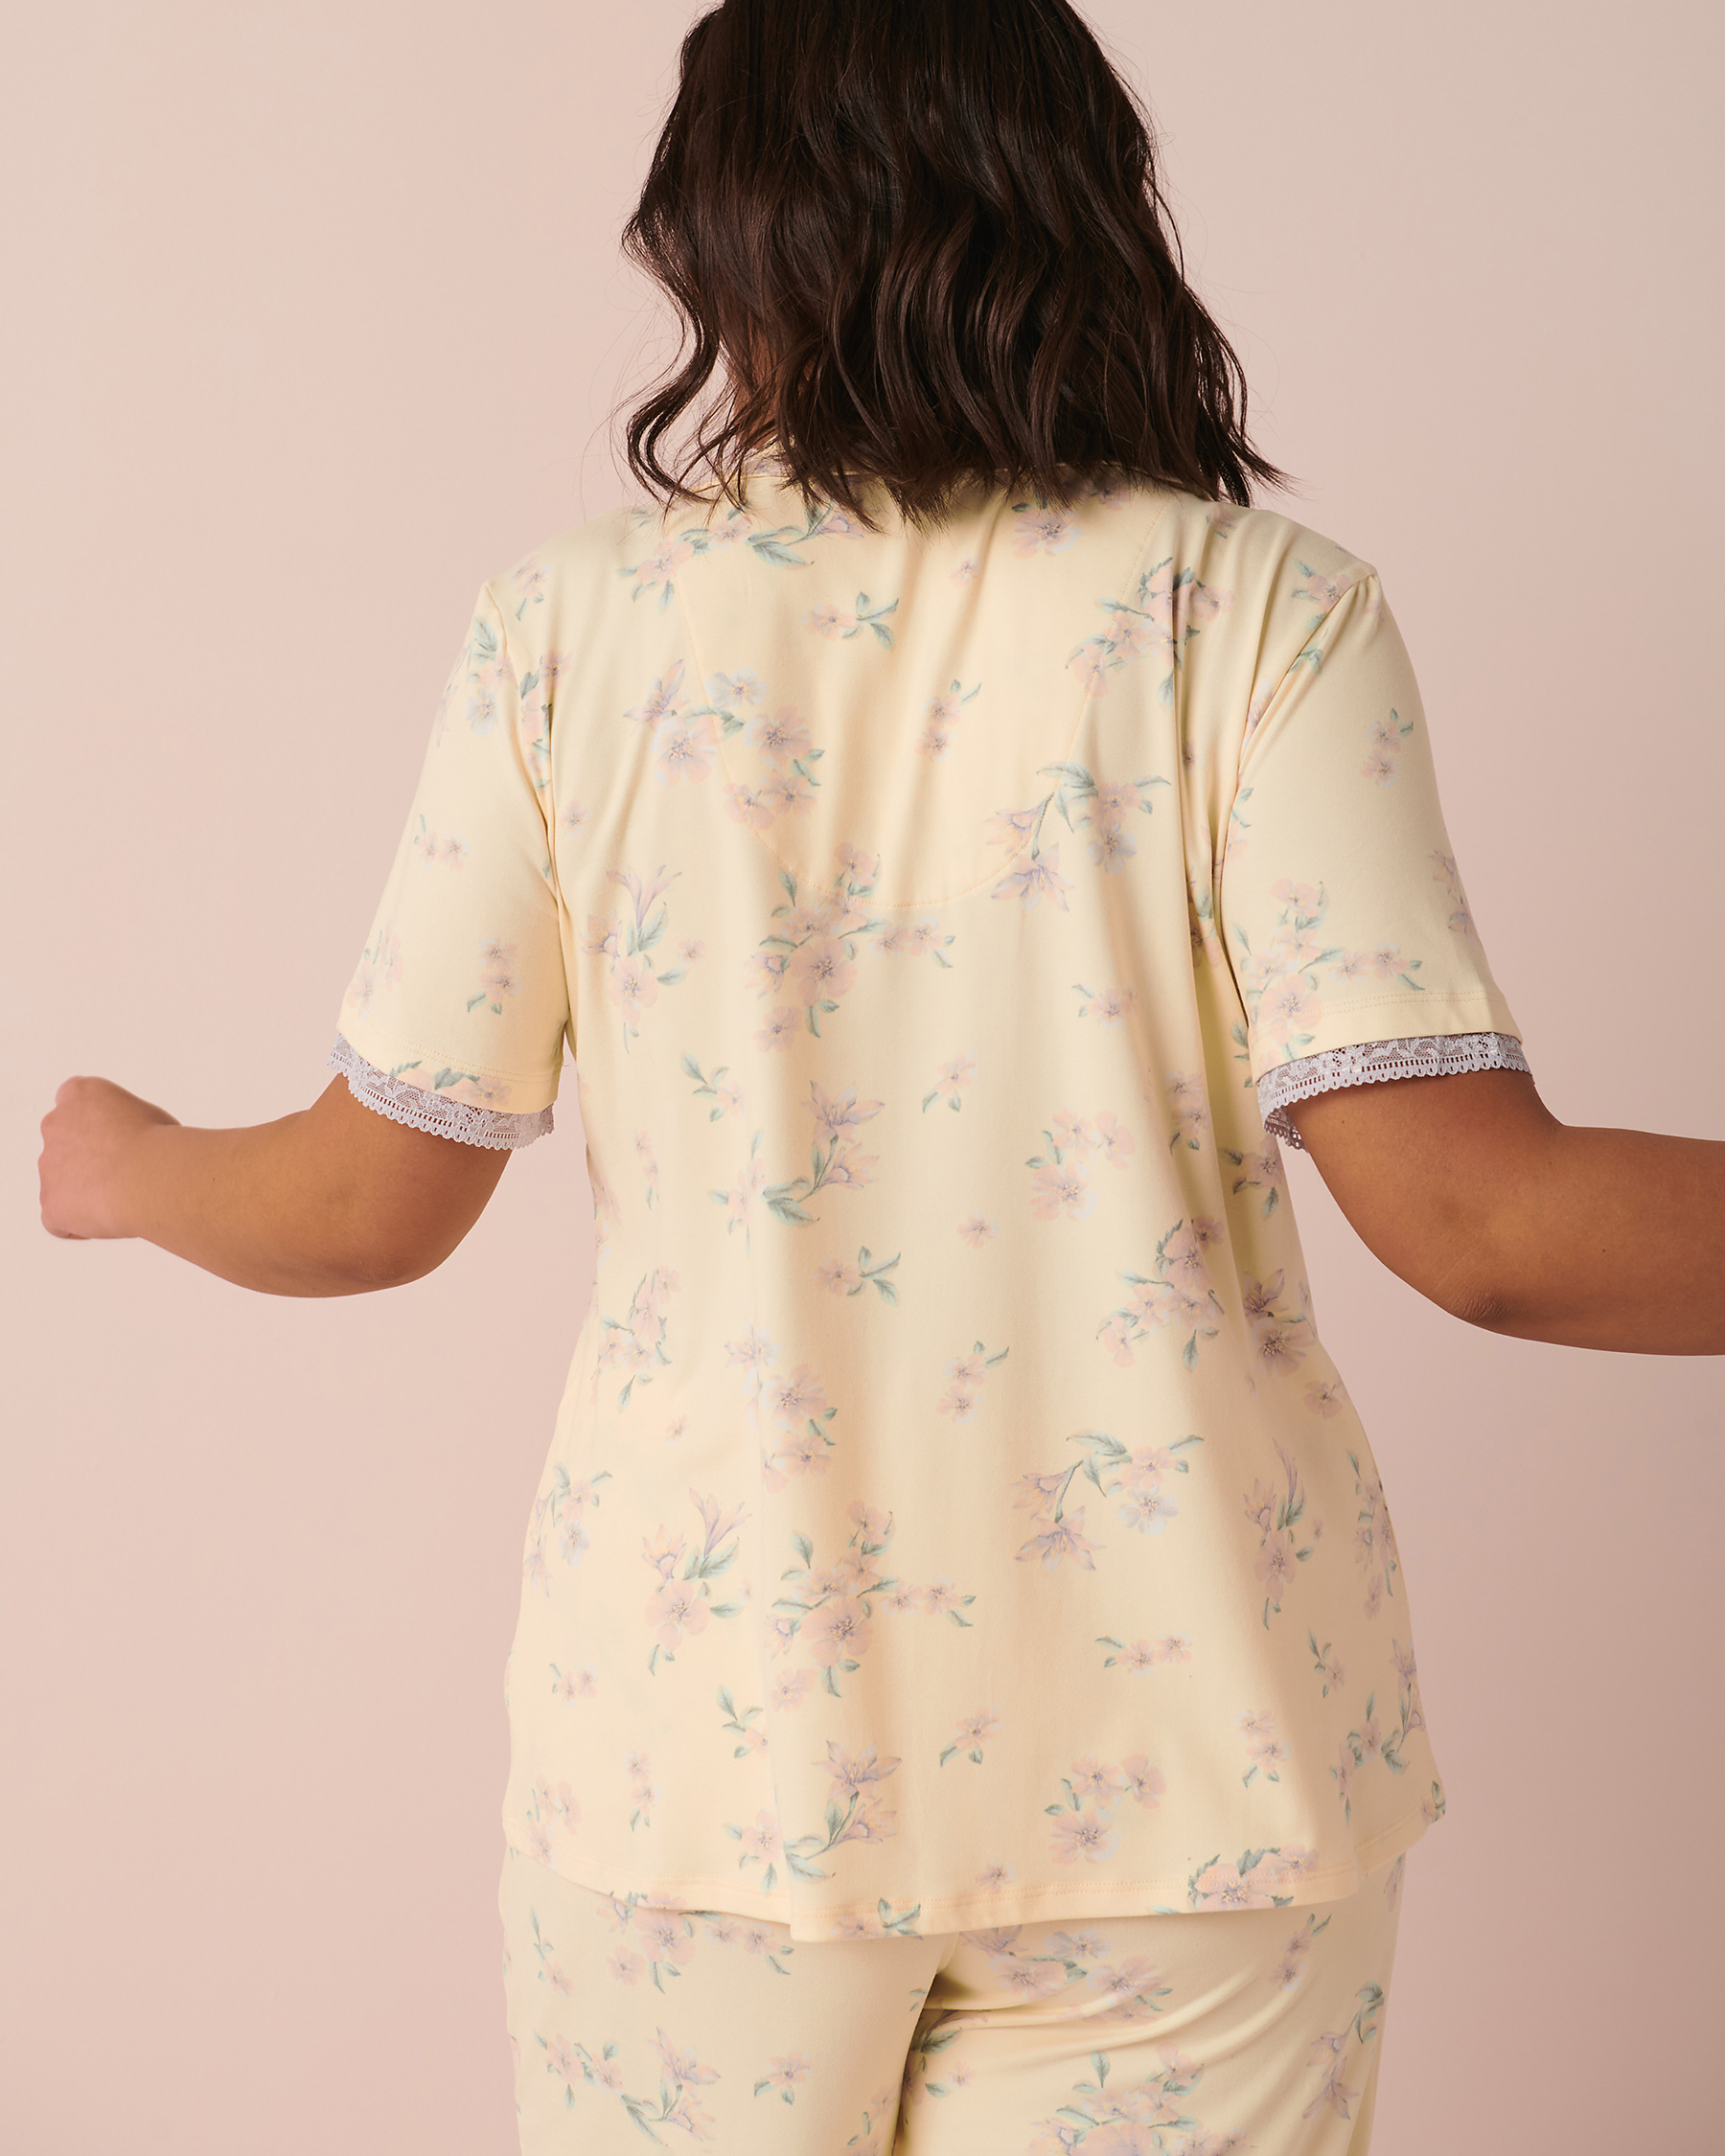 La Vie en Rose Super Soft Lace Detail Shirt. 2